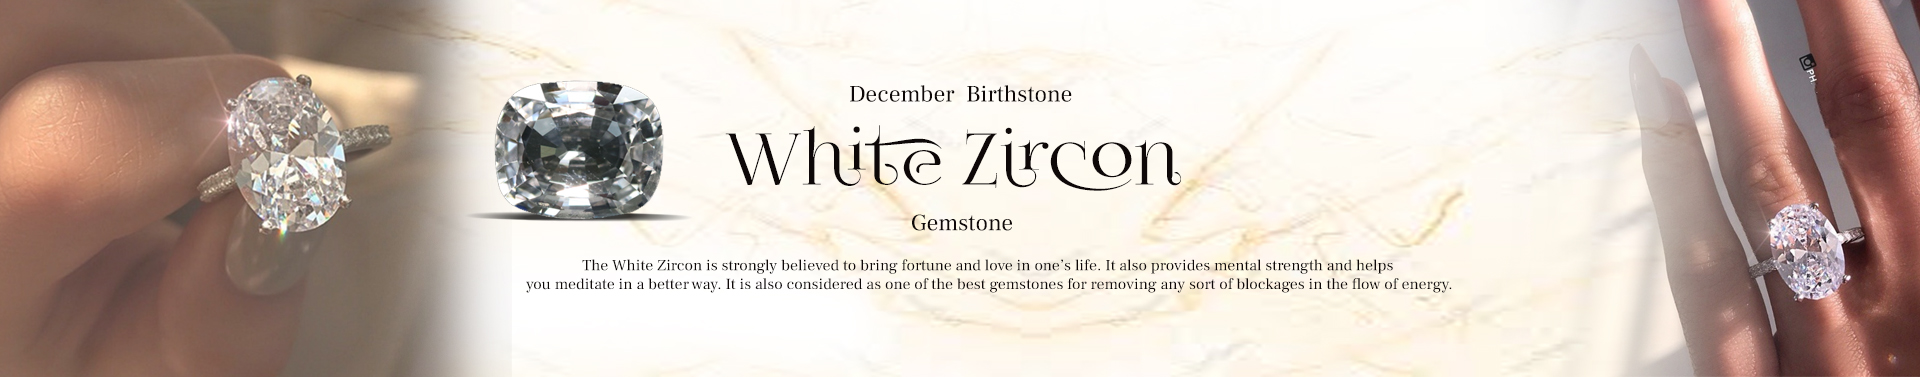 White Zircon